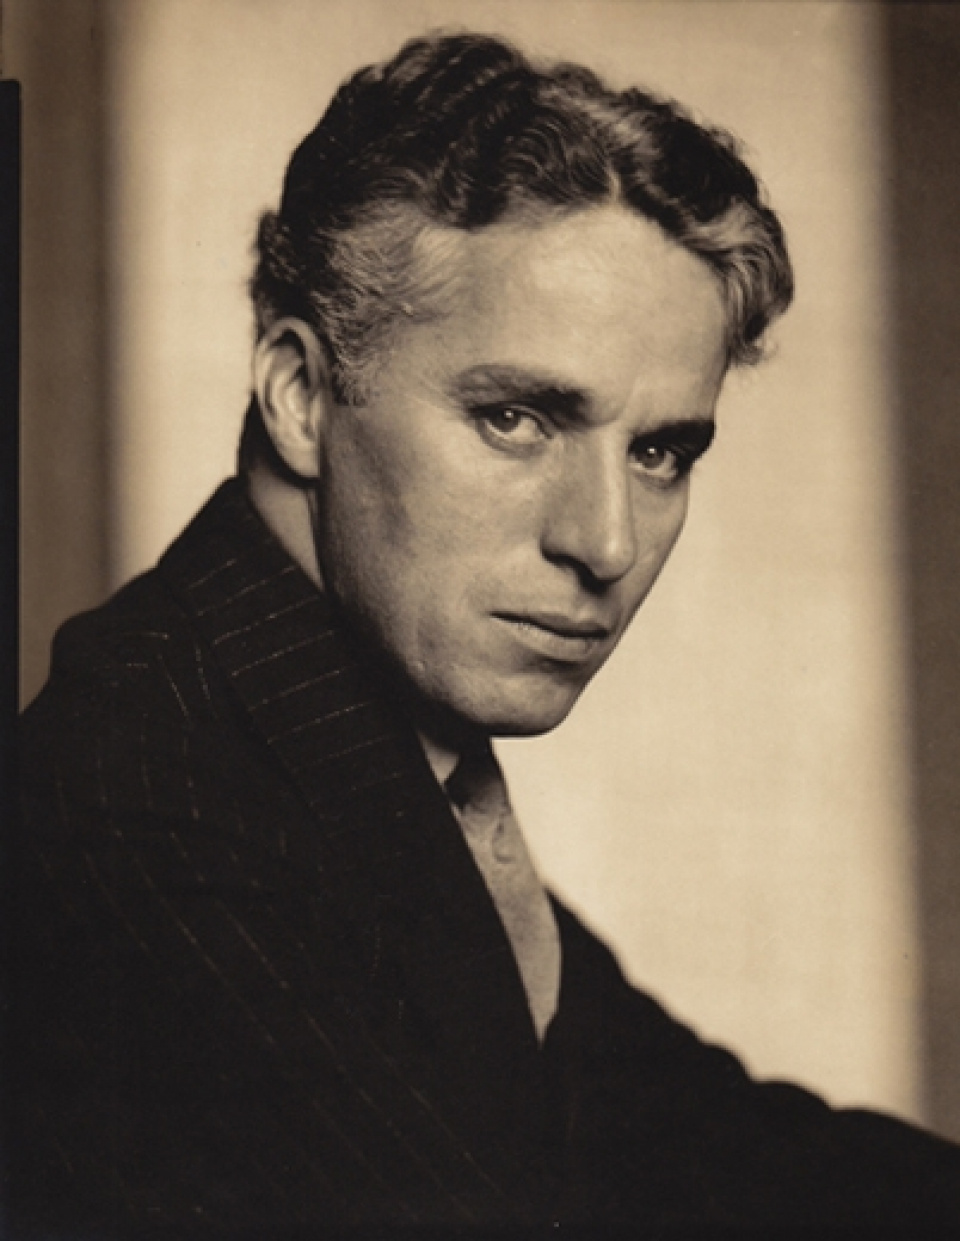 Edward Steichen. Charlie Chaplin, c. 1925